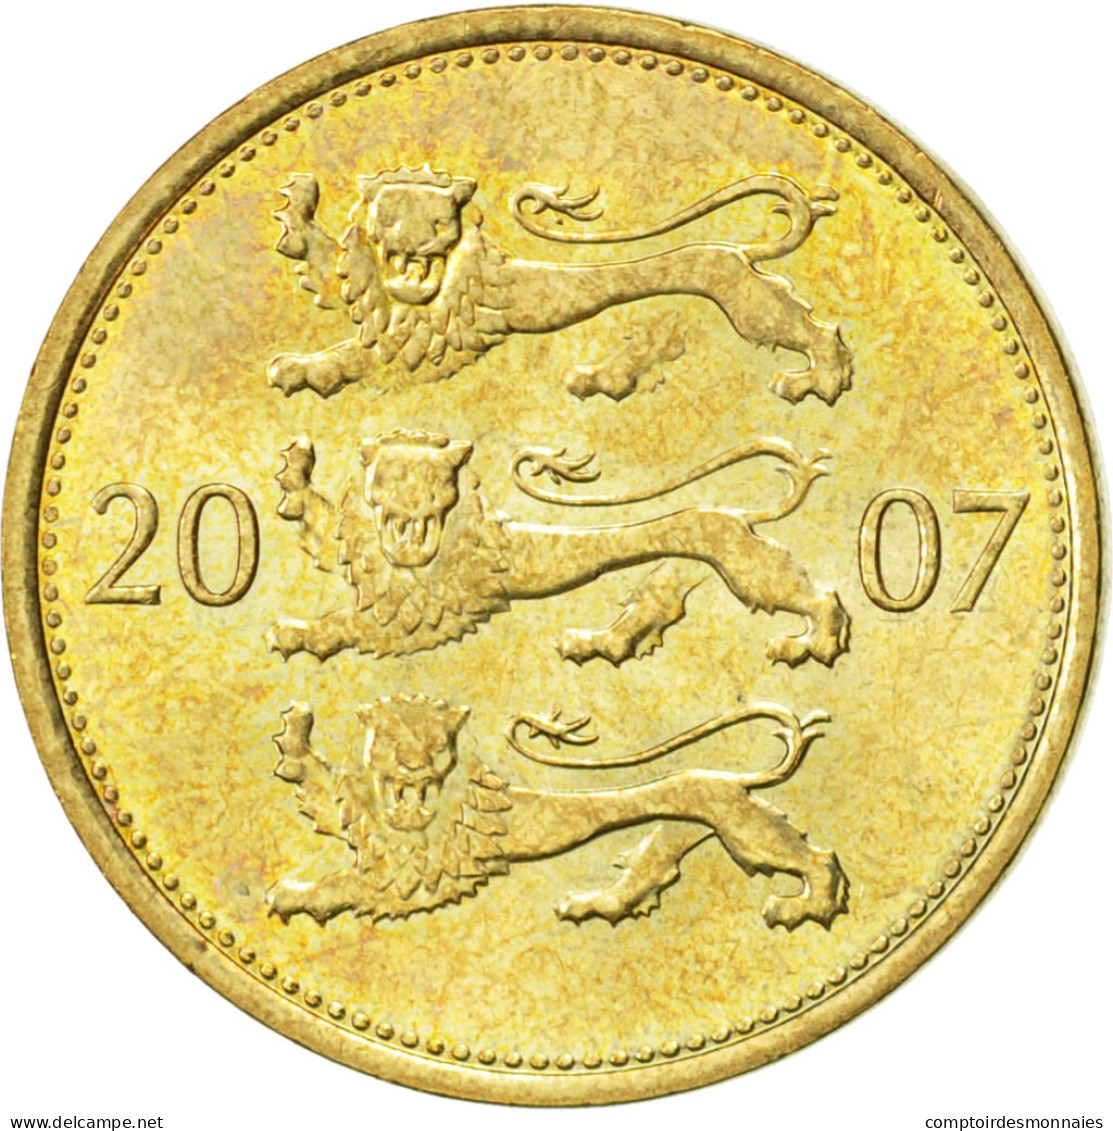 Monnaie, Estonia, 50 Senti, 2007, SUP, Aluminum-Bronze, KM:24 - Estonie